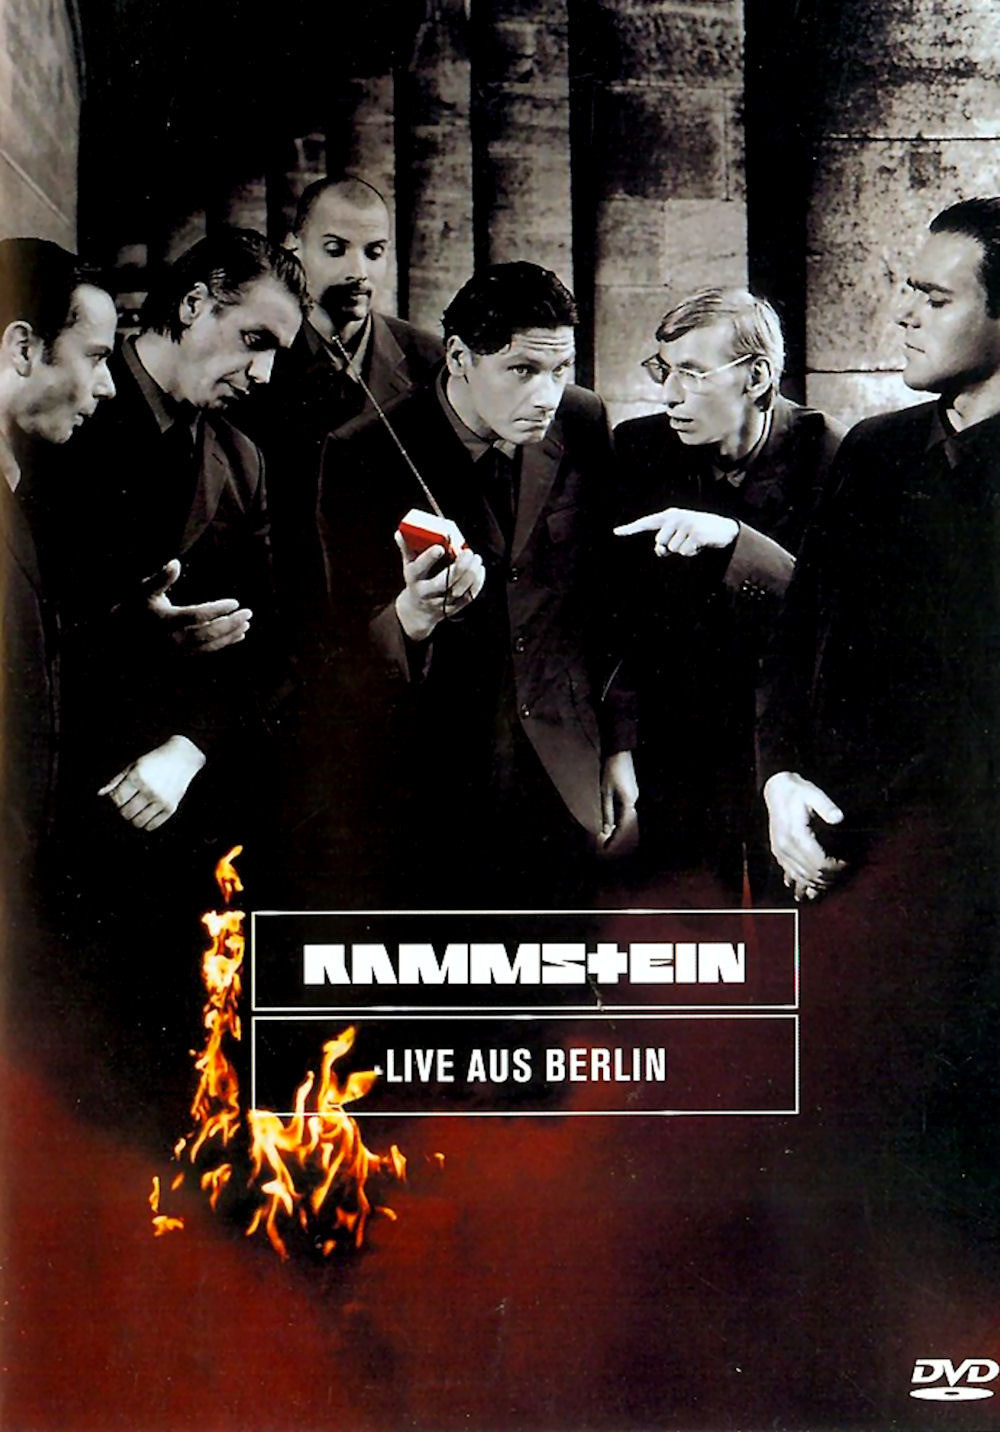 DVD Rammstein - Live aus Berlin